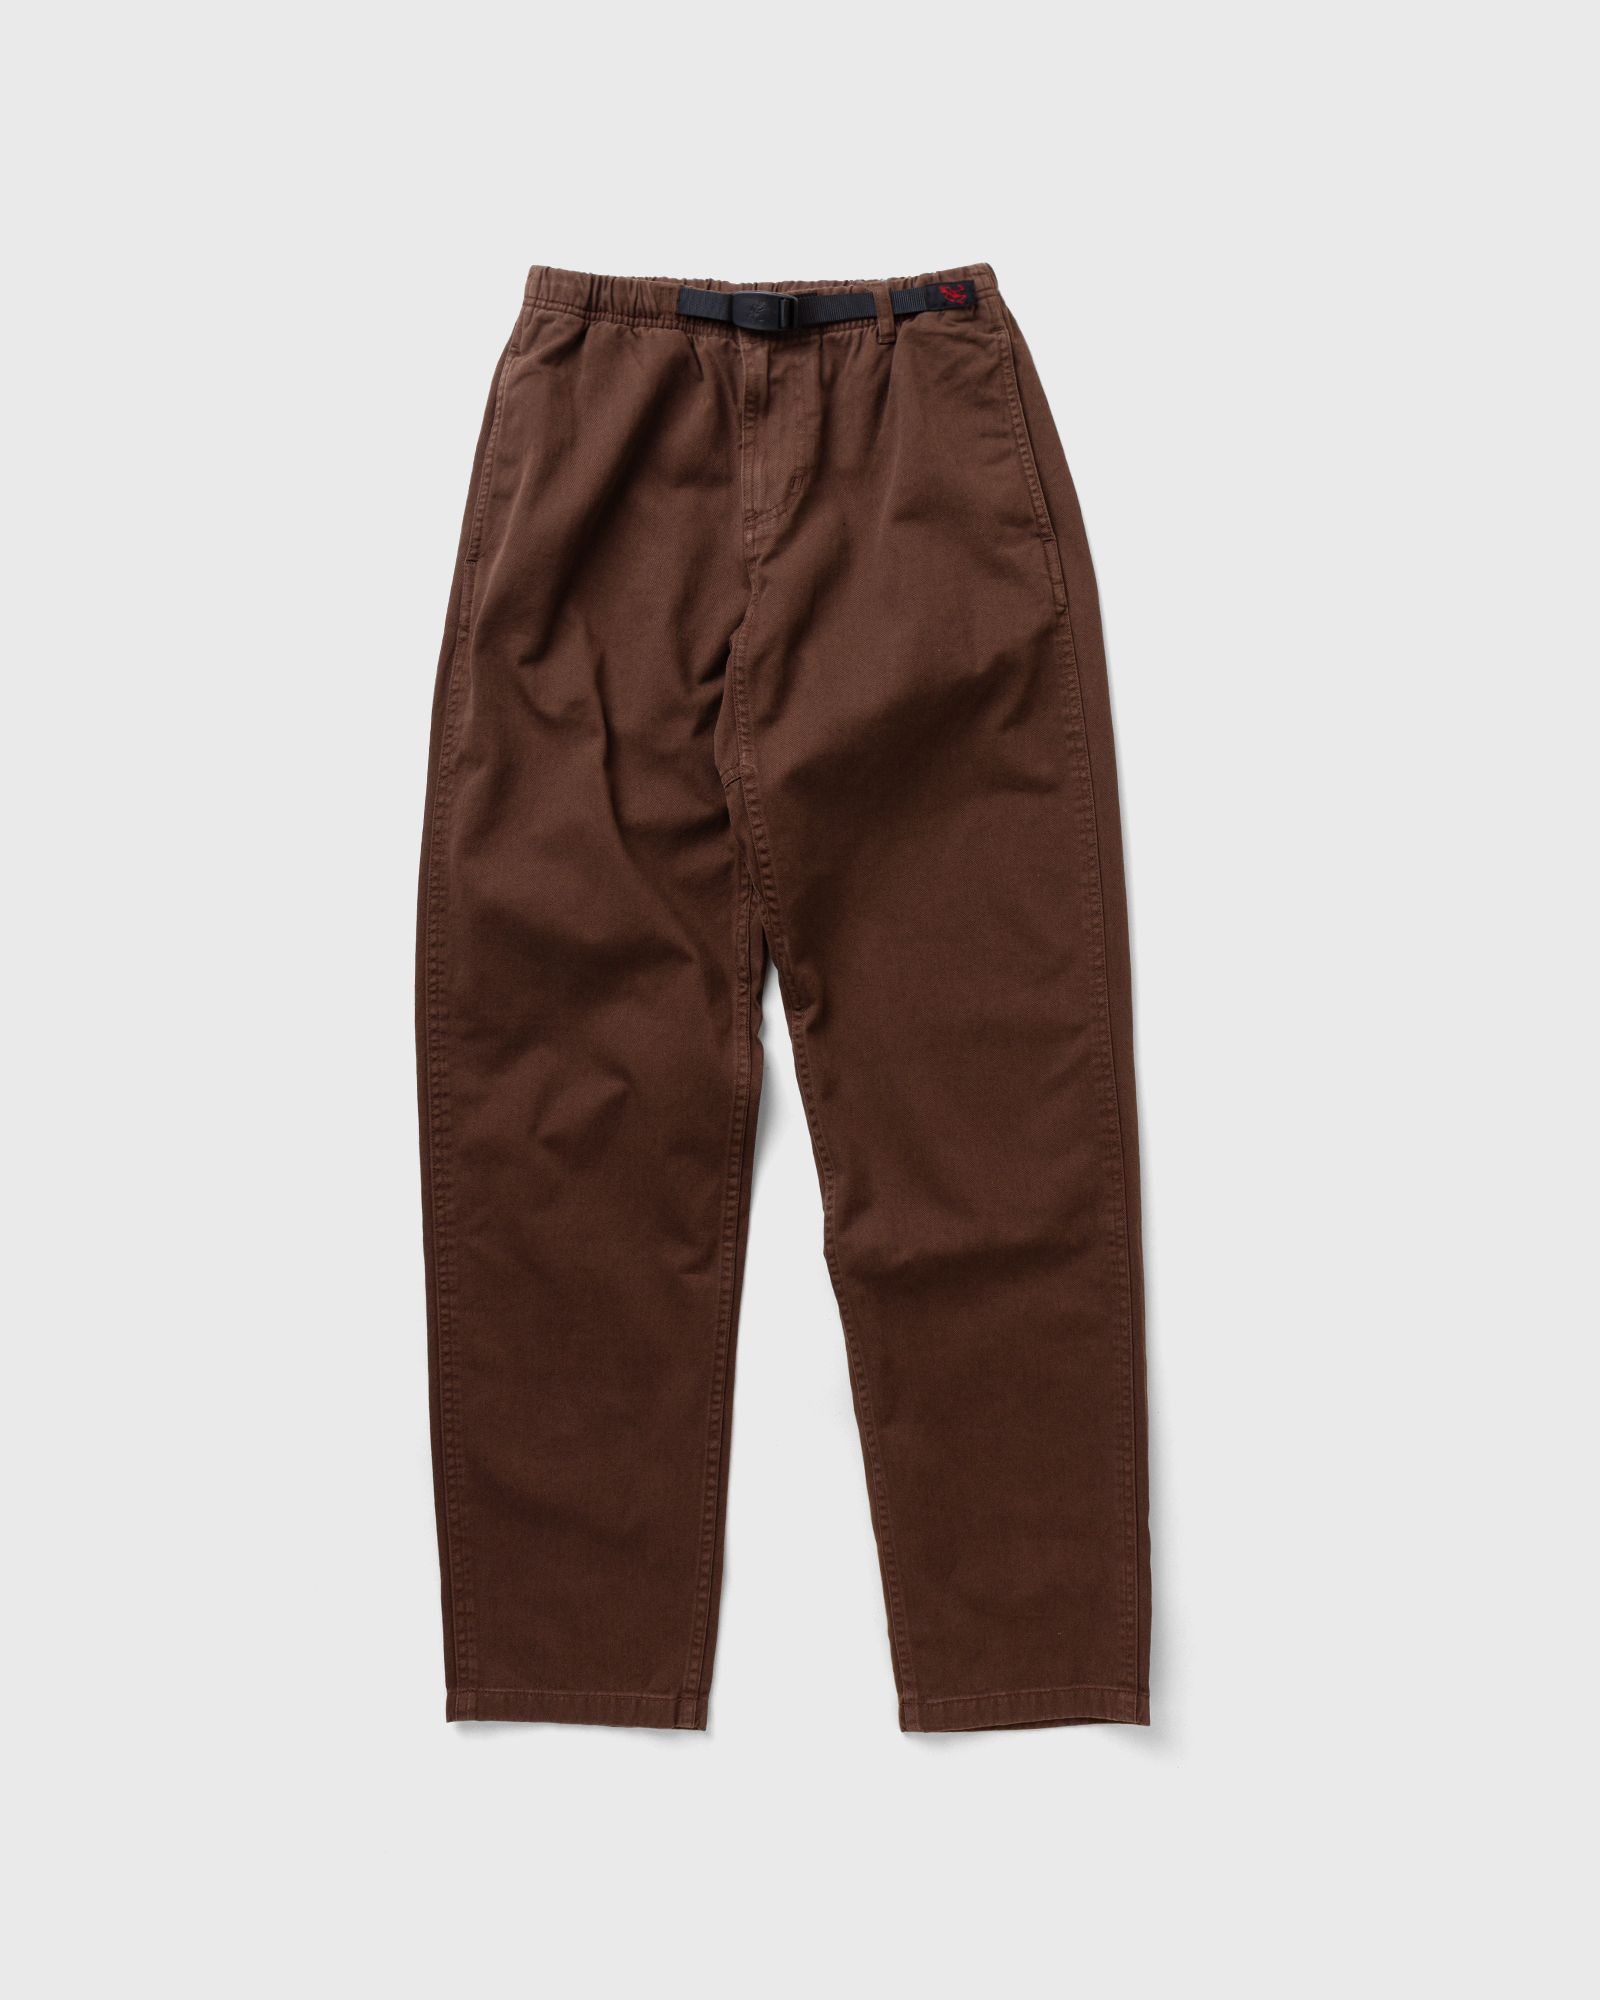 Gramicci - pant men casual pants brown in größe:l